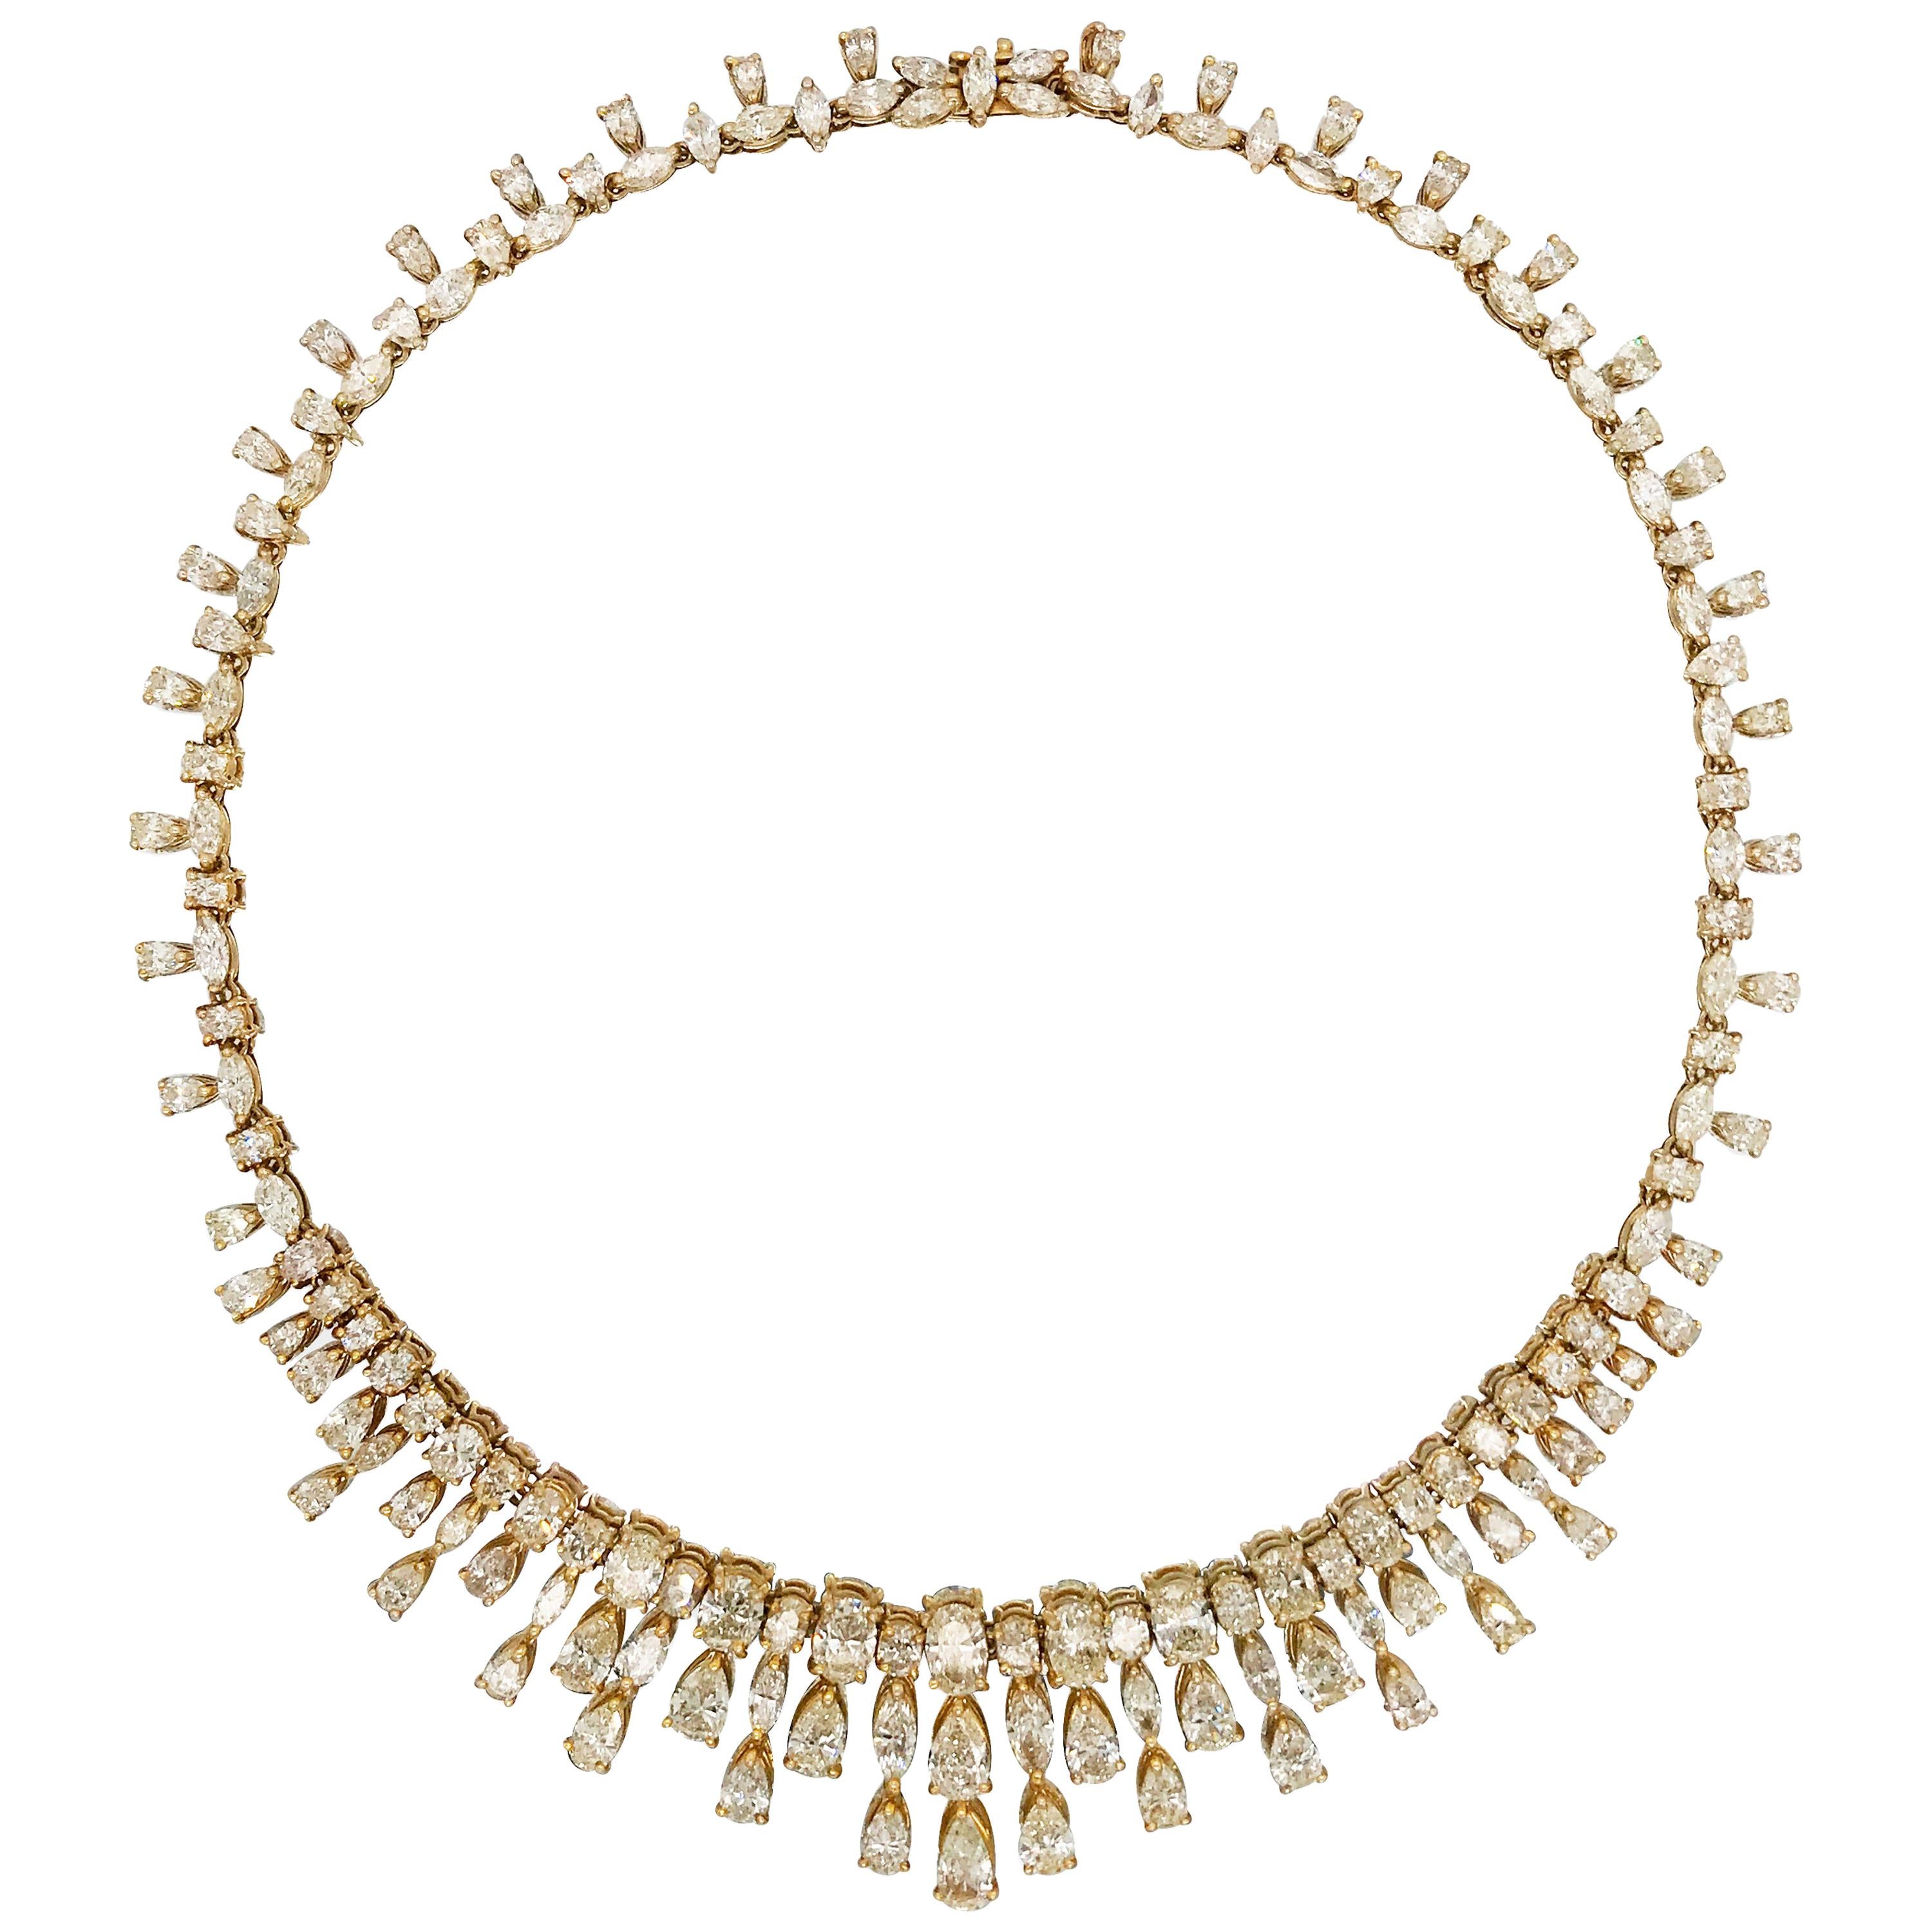 40 Carat Diamond Necklace